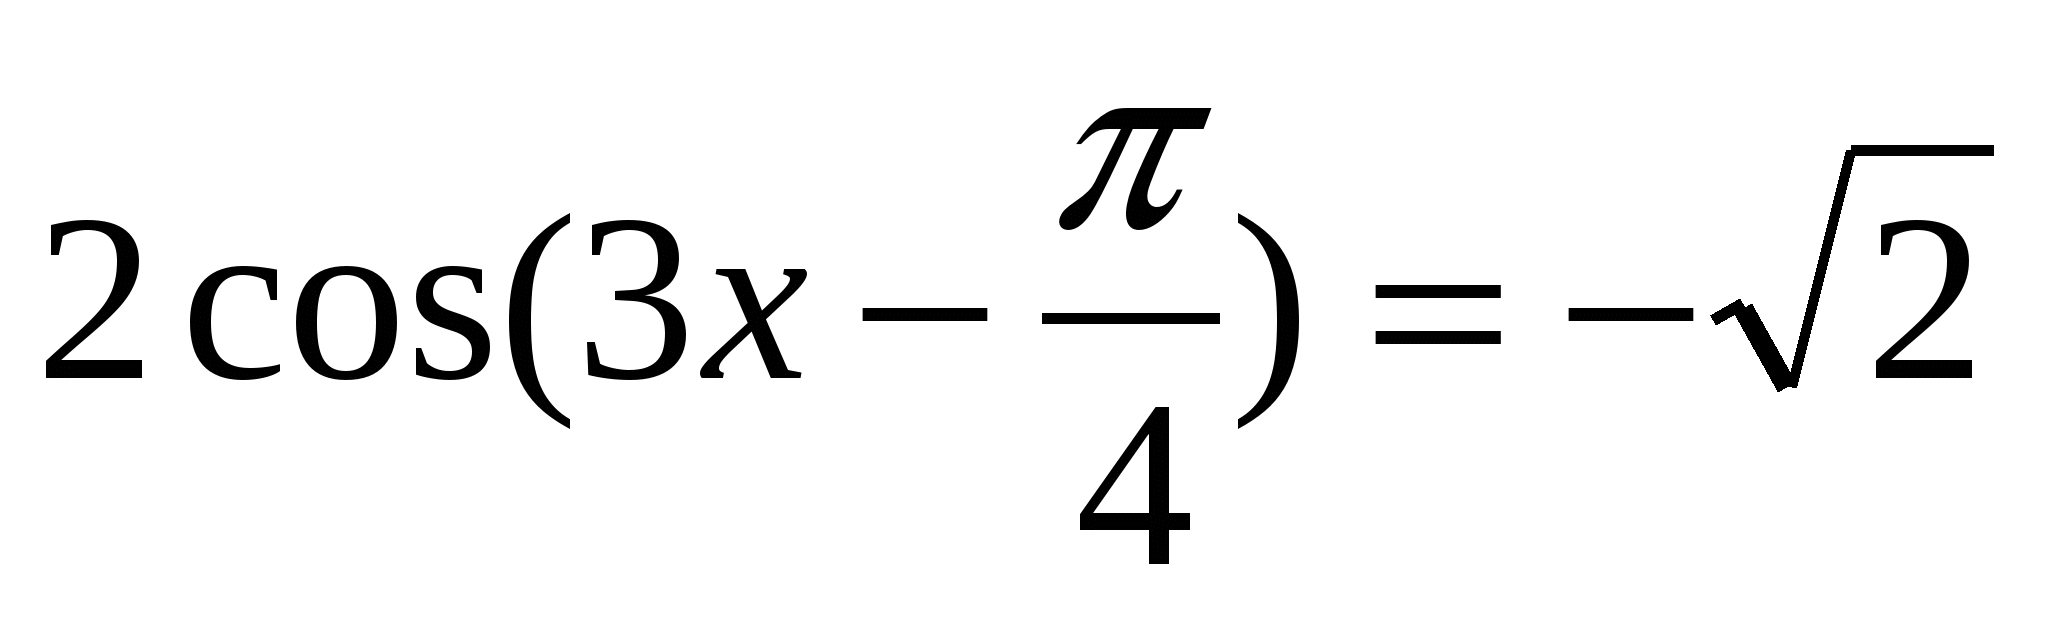 Урок математики по теме Решение тригонометрических уравнений